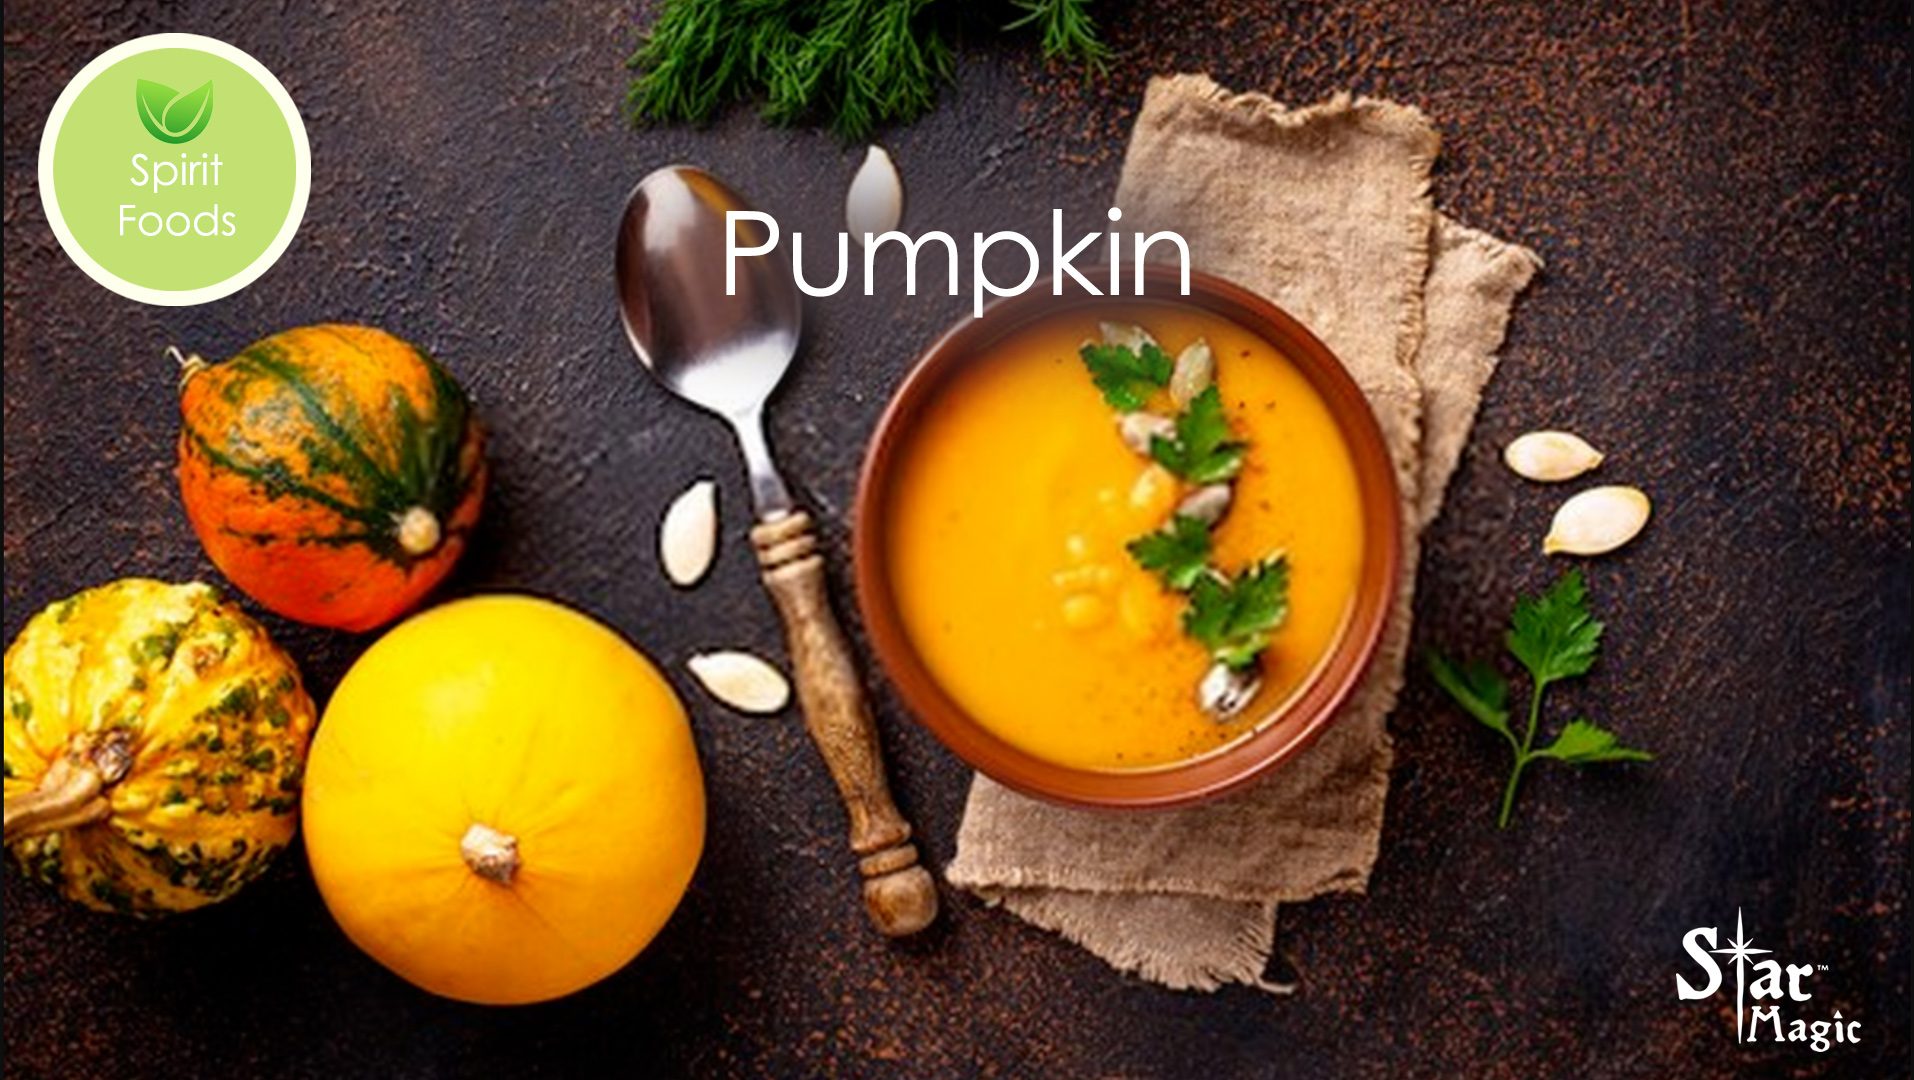 Spirit Food – Pumpkin